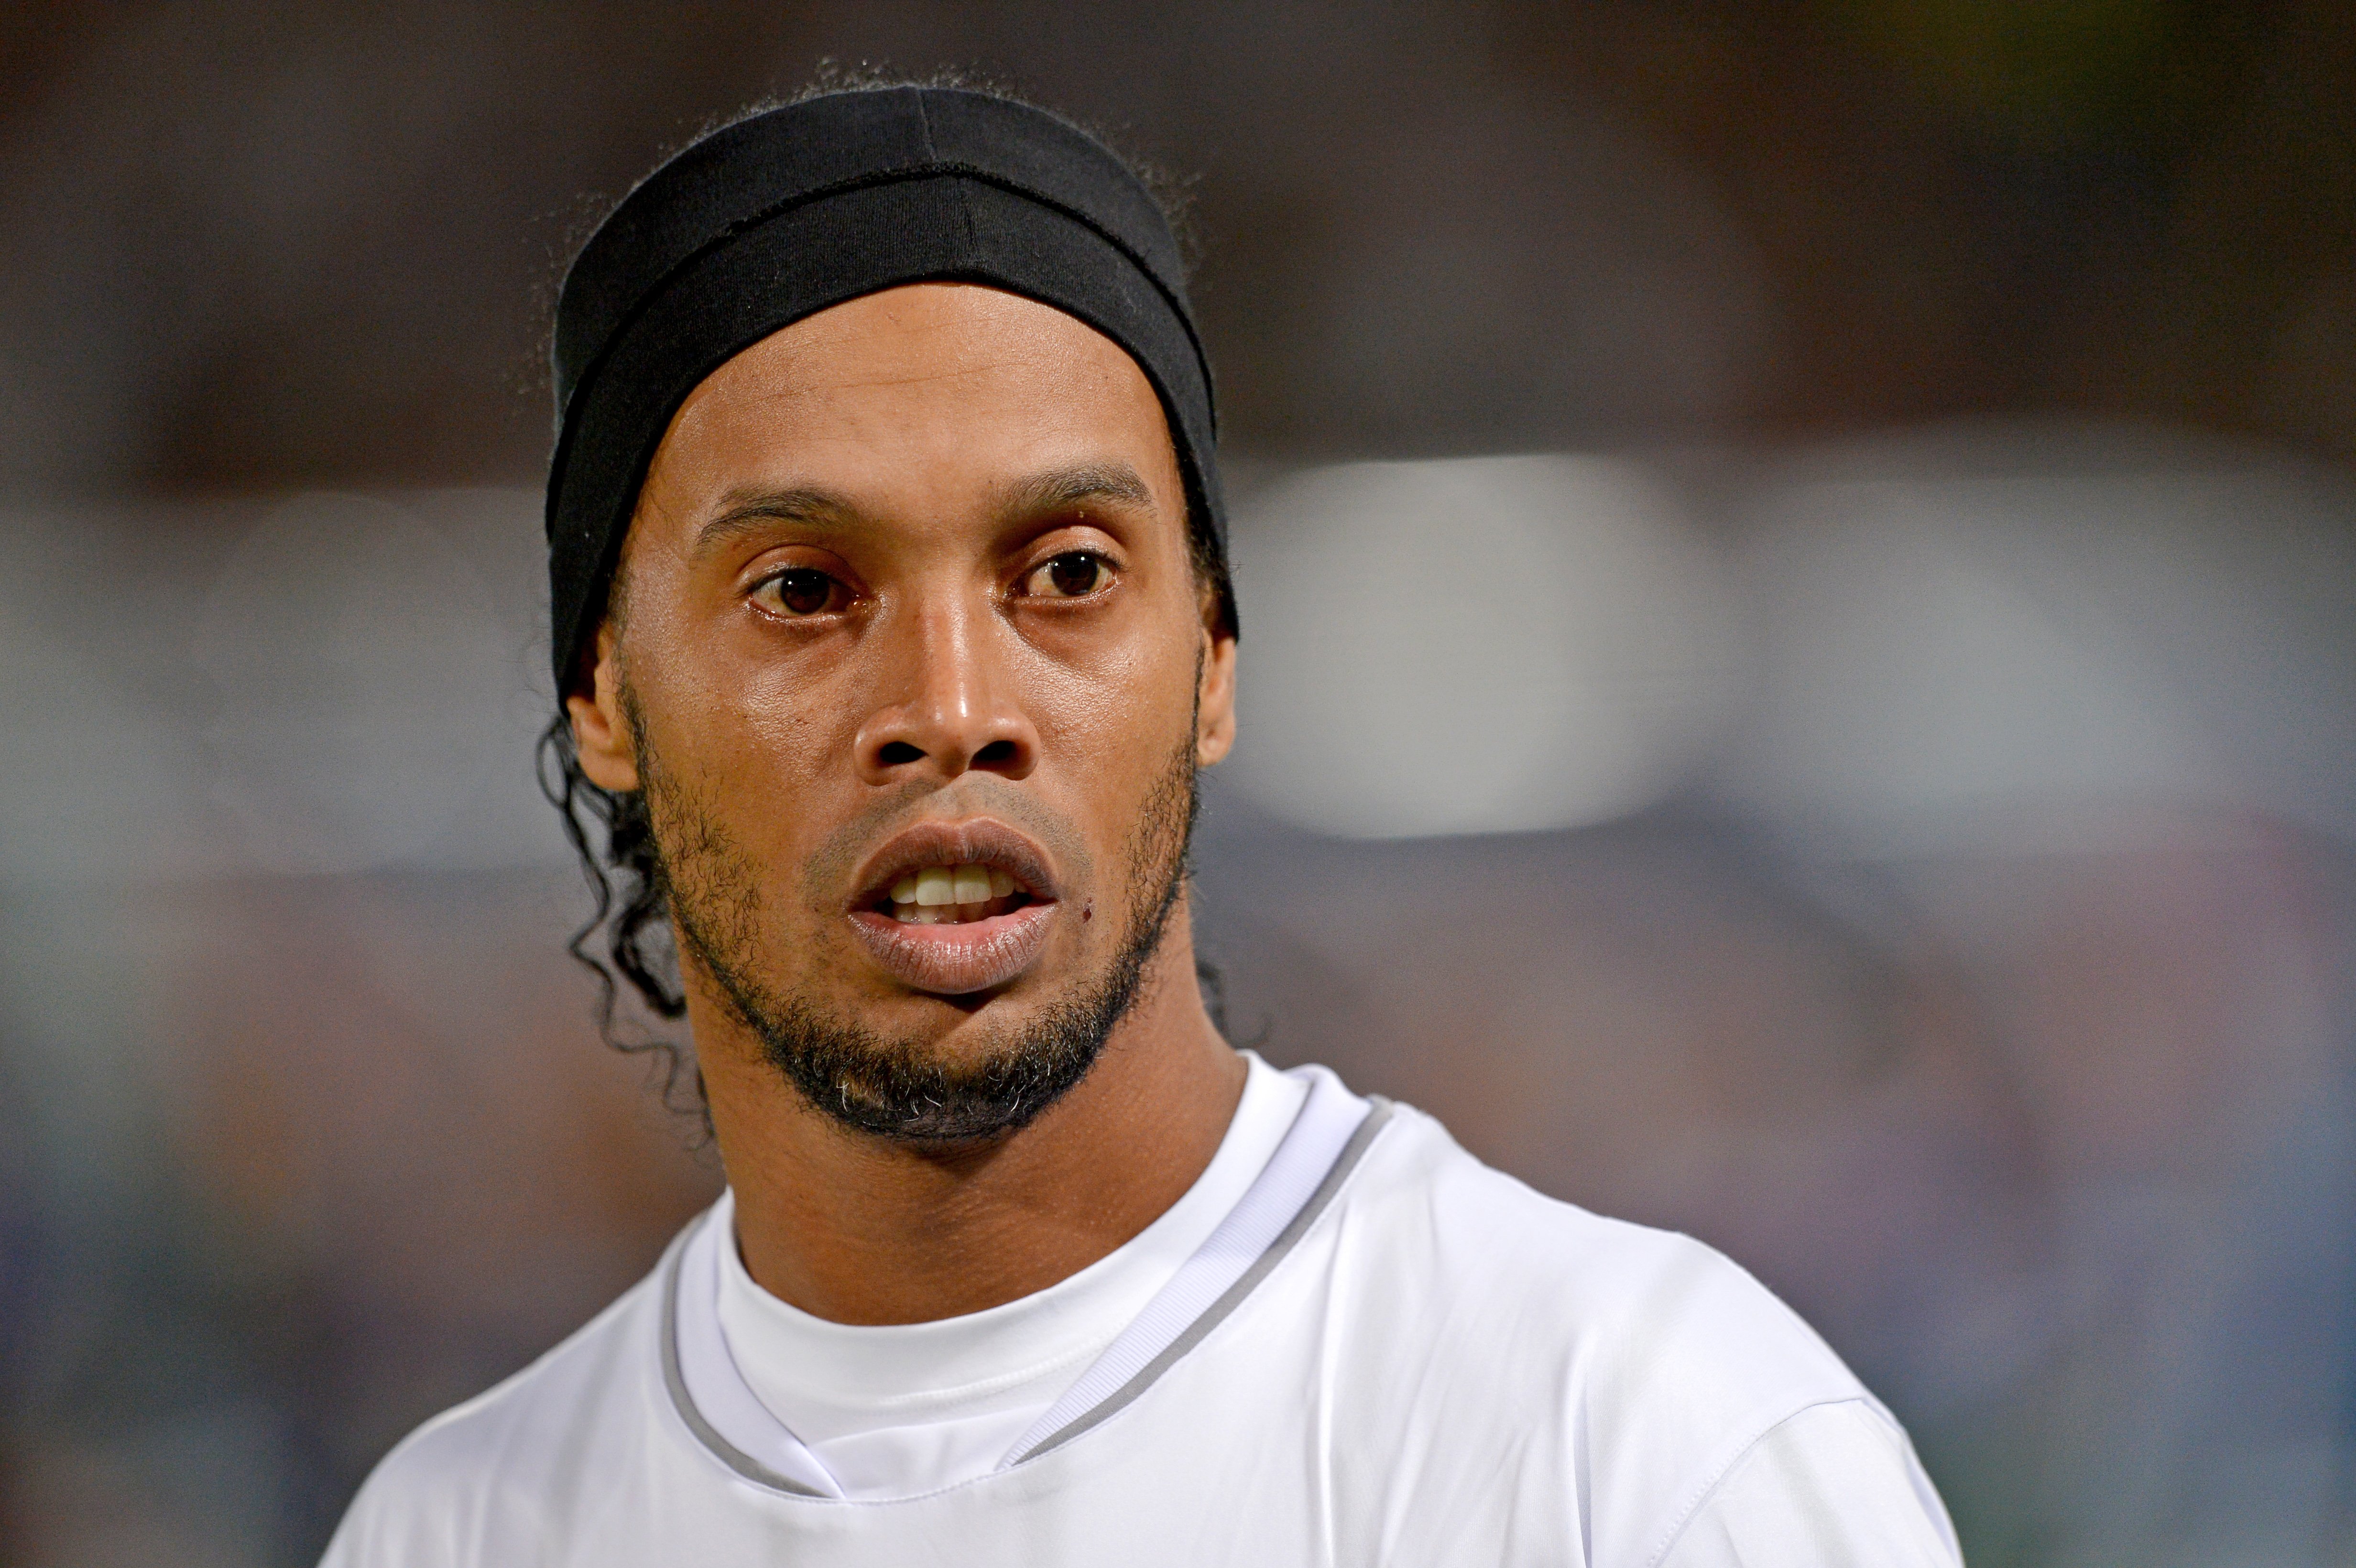 El soci de Ronaldinho i Deco en la nit de Barcelona, contactat per Joan Laporta